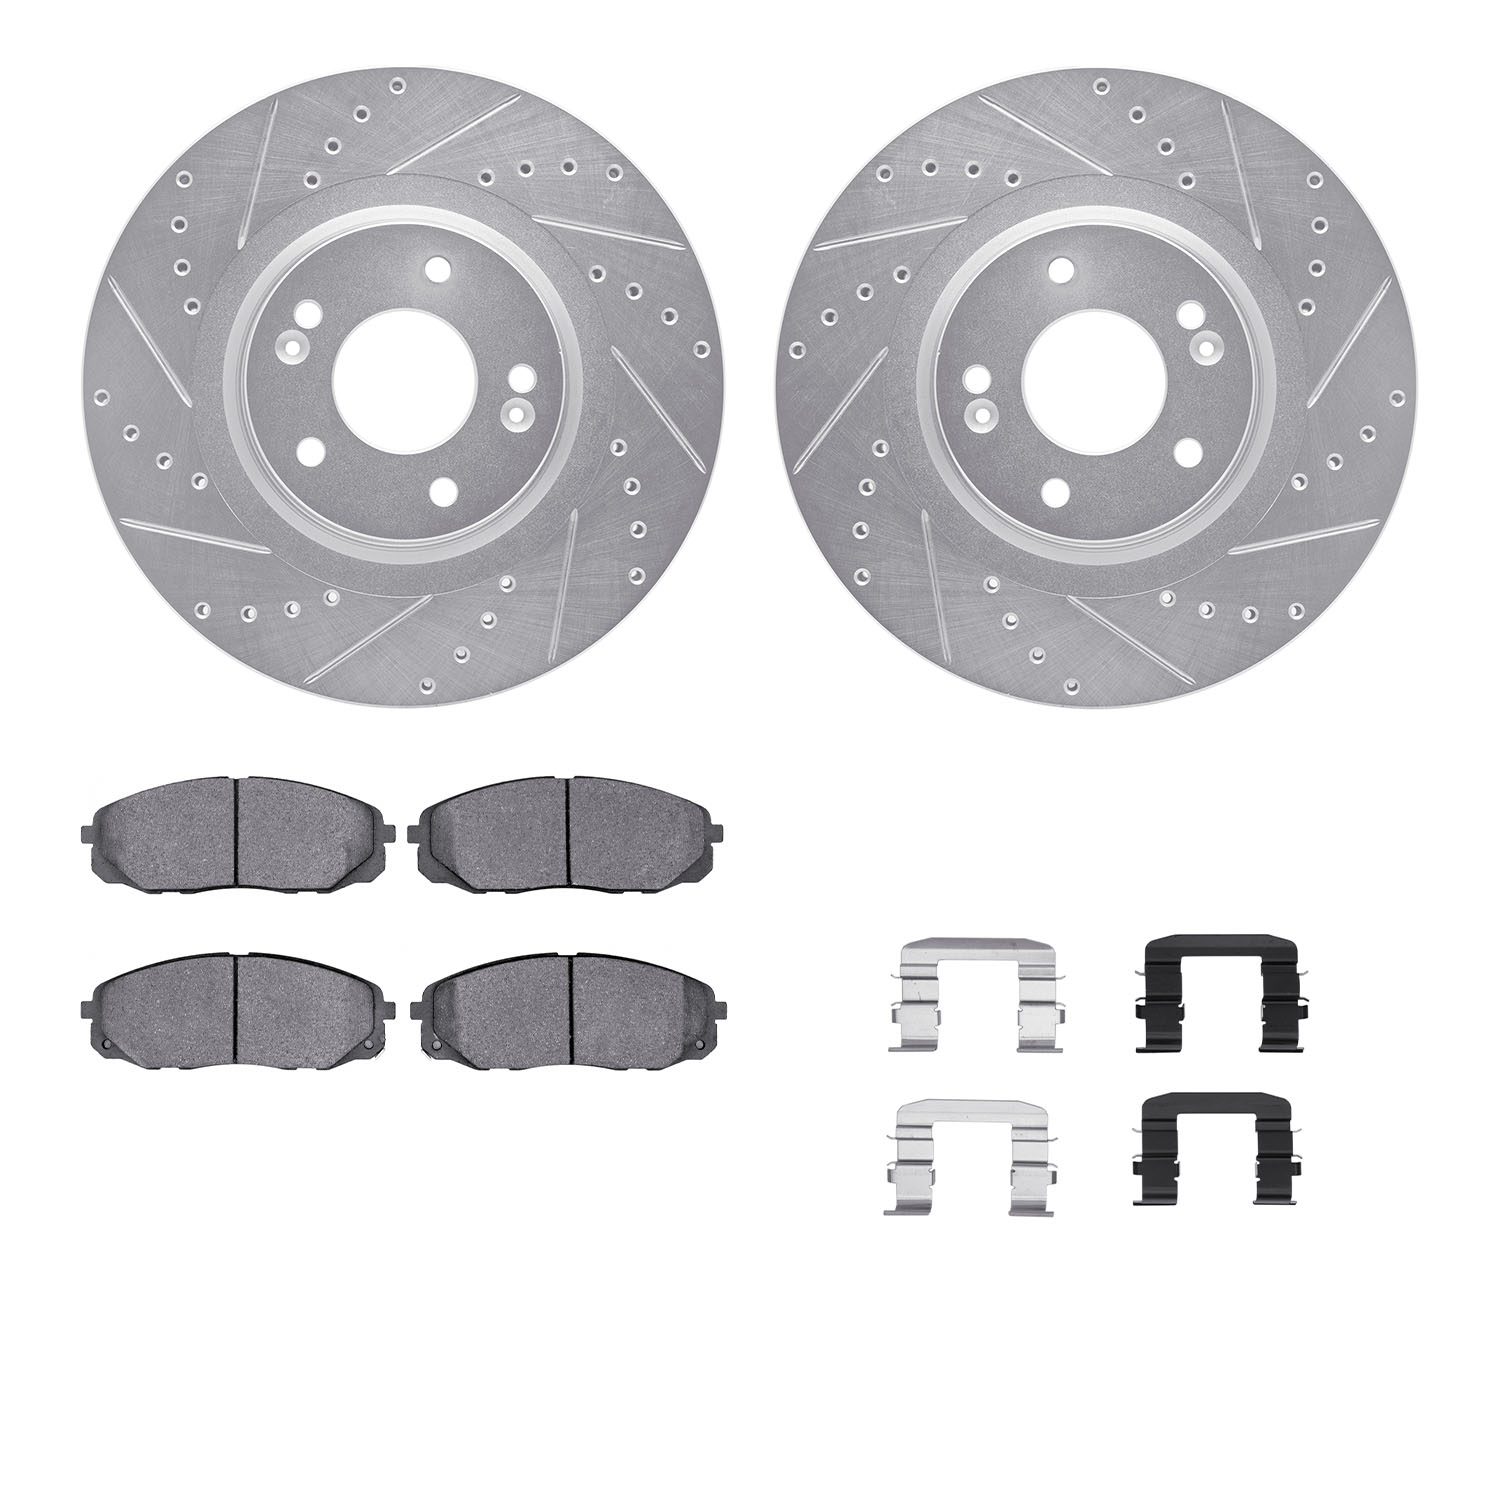 7312-21038 Drilled/Slotted Brake Rotor with 3000-Series Ceramic Brake Pads Kit & Hardware [Silver], 2015-2021 Kia/Hyundai/Genesi